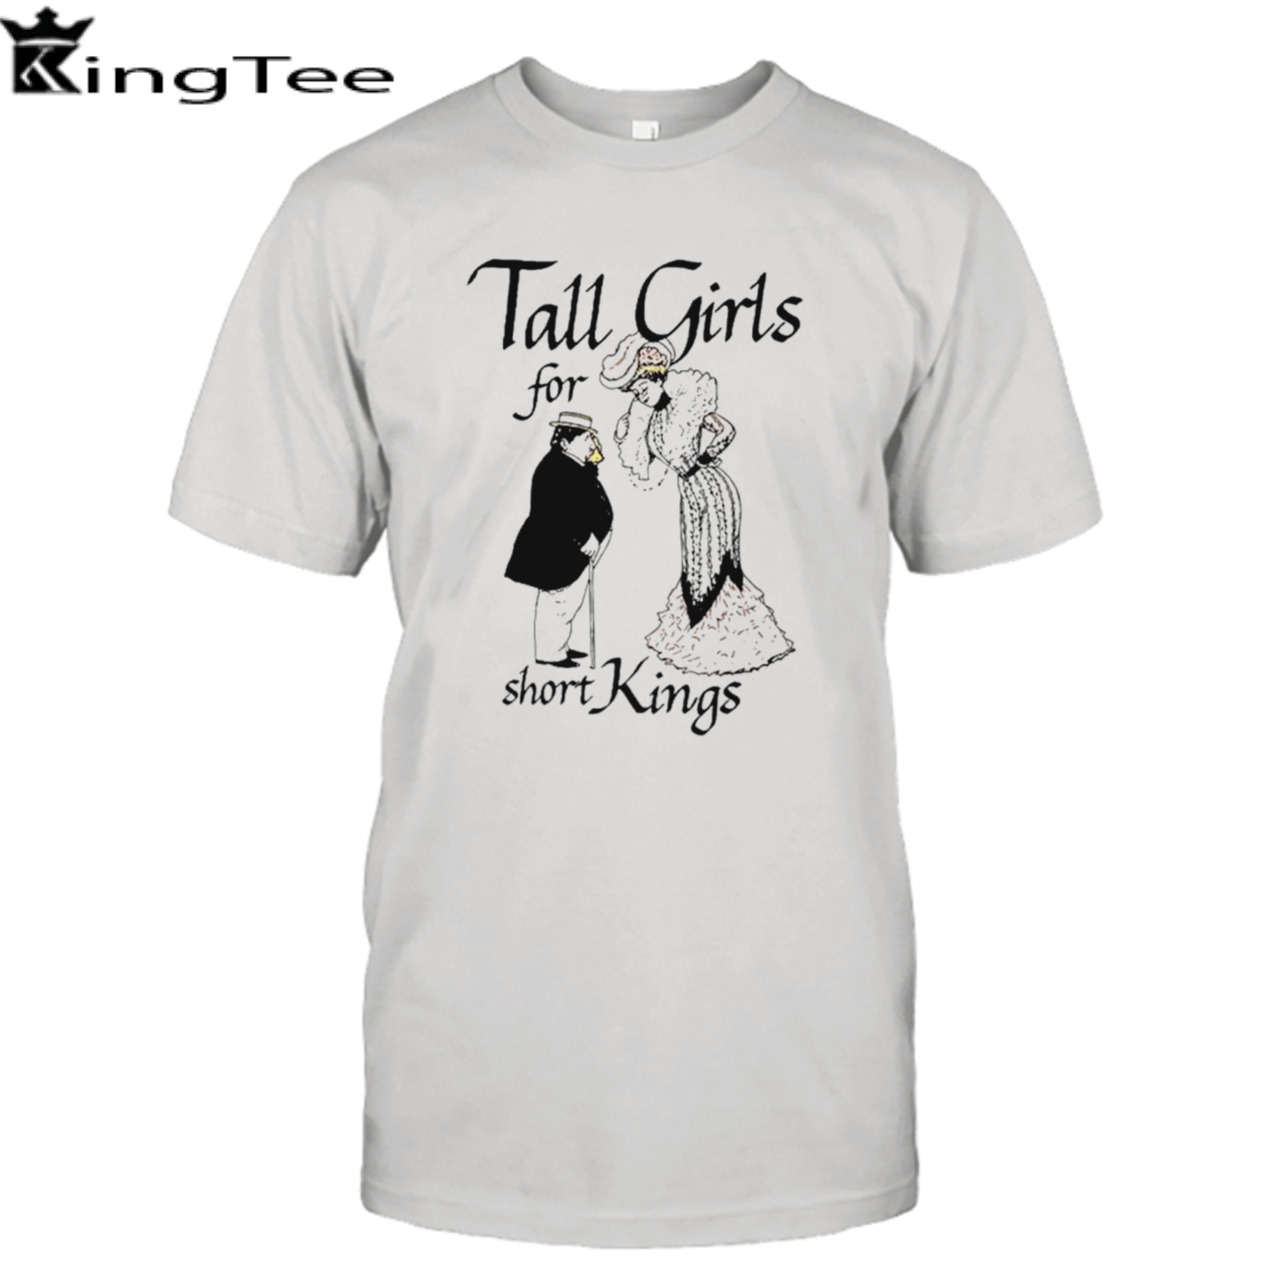 Tall girls for short kings shirt